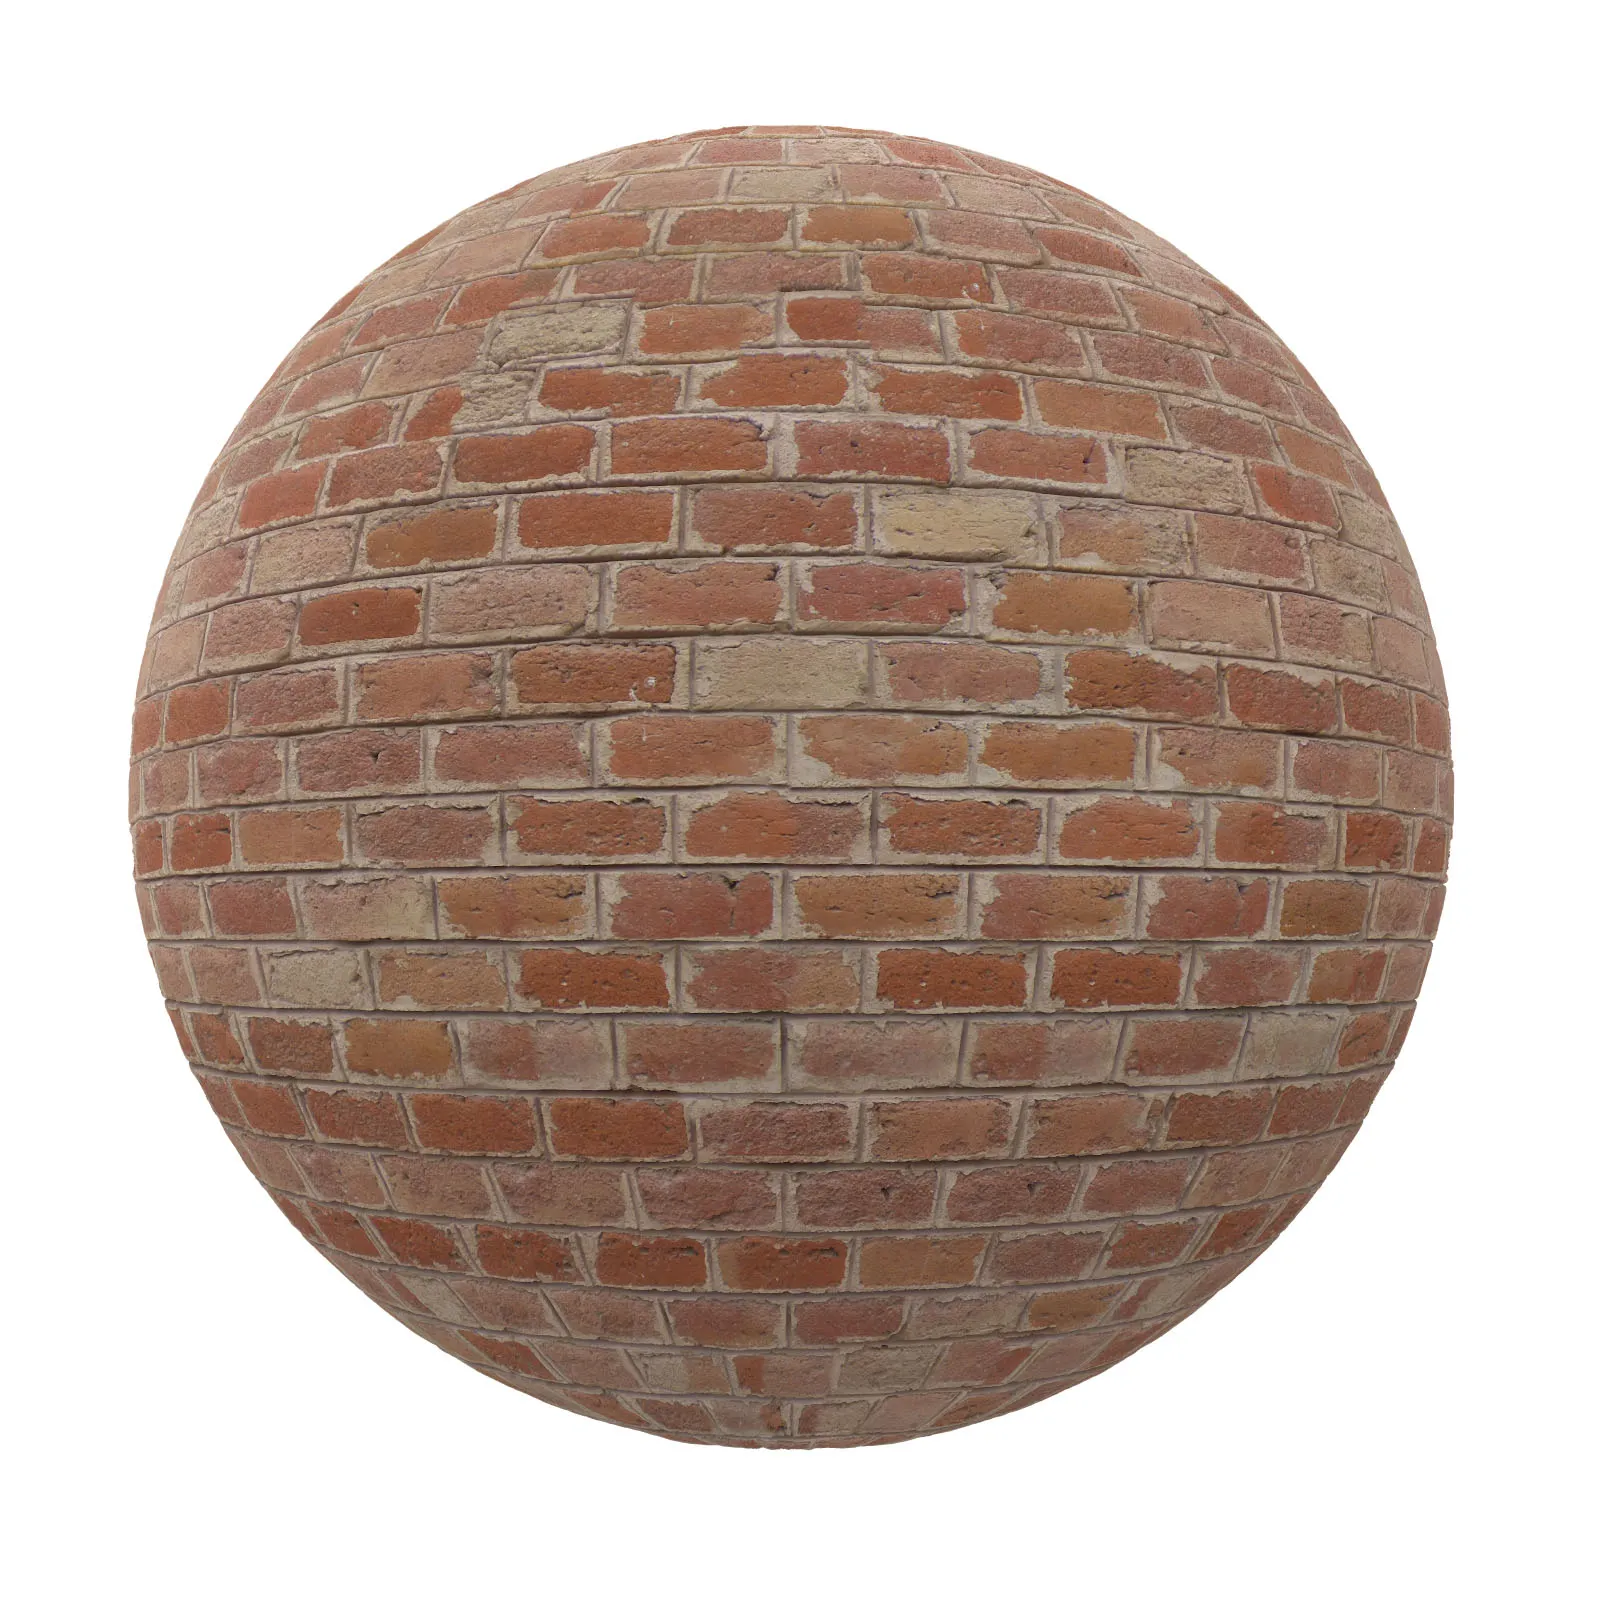 PBR CGAXIS TEXTURES – BRICK – Brown Brick Wall 11